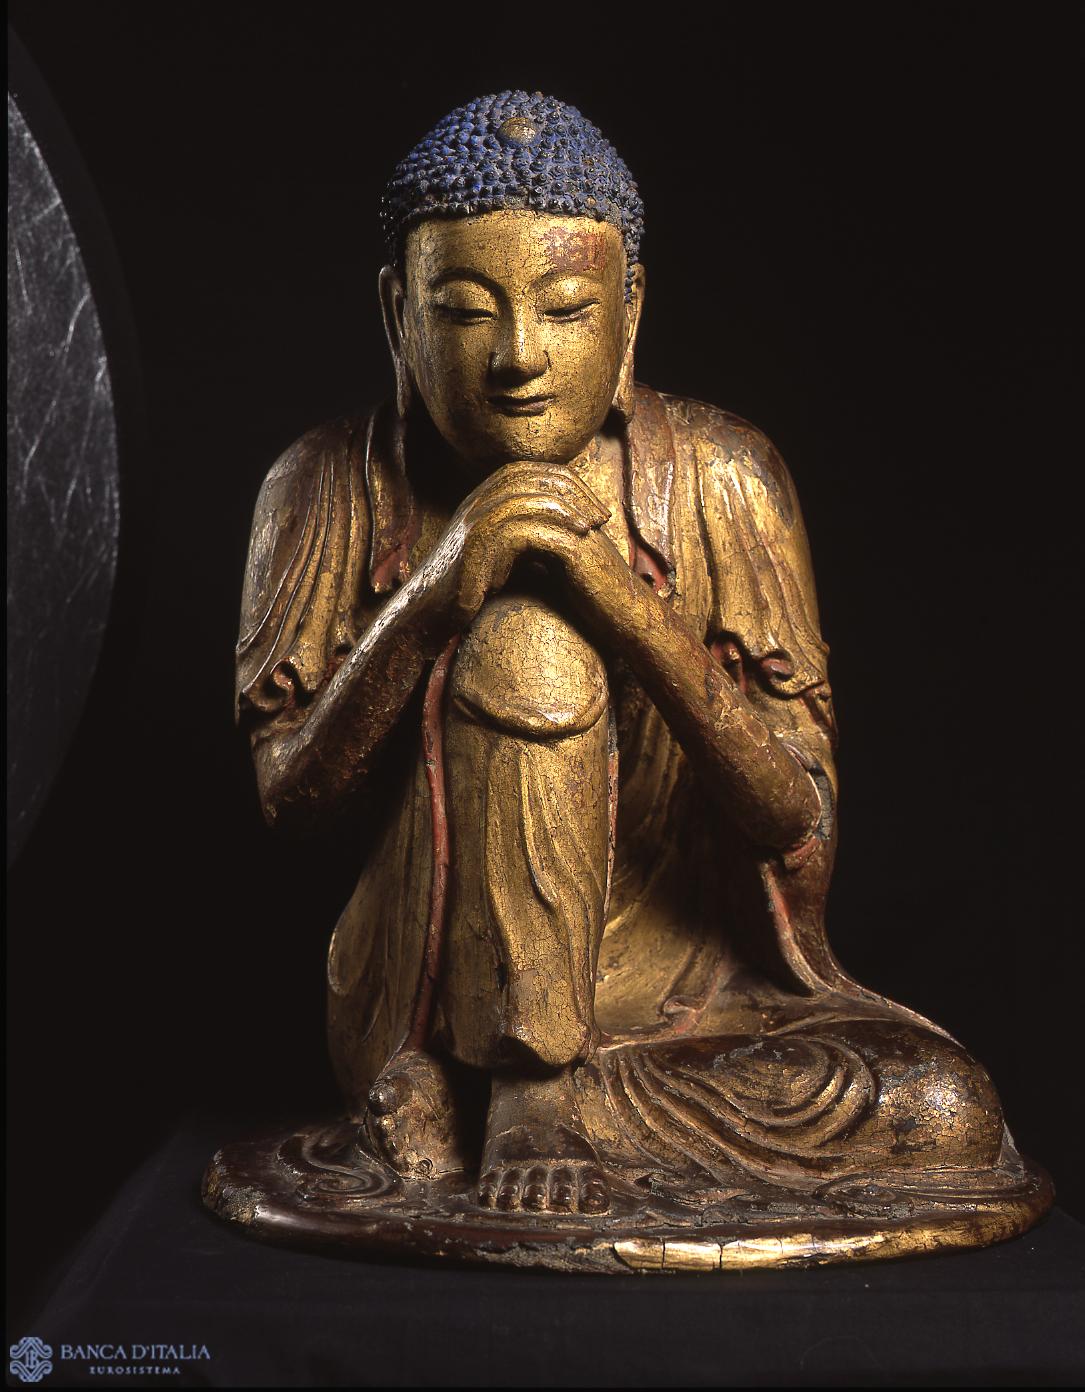 The Buddha Shakyamuni in Meditation